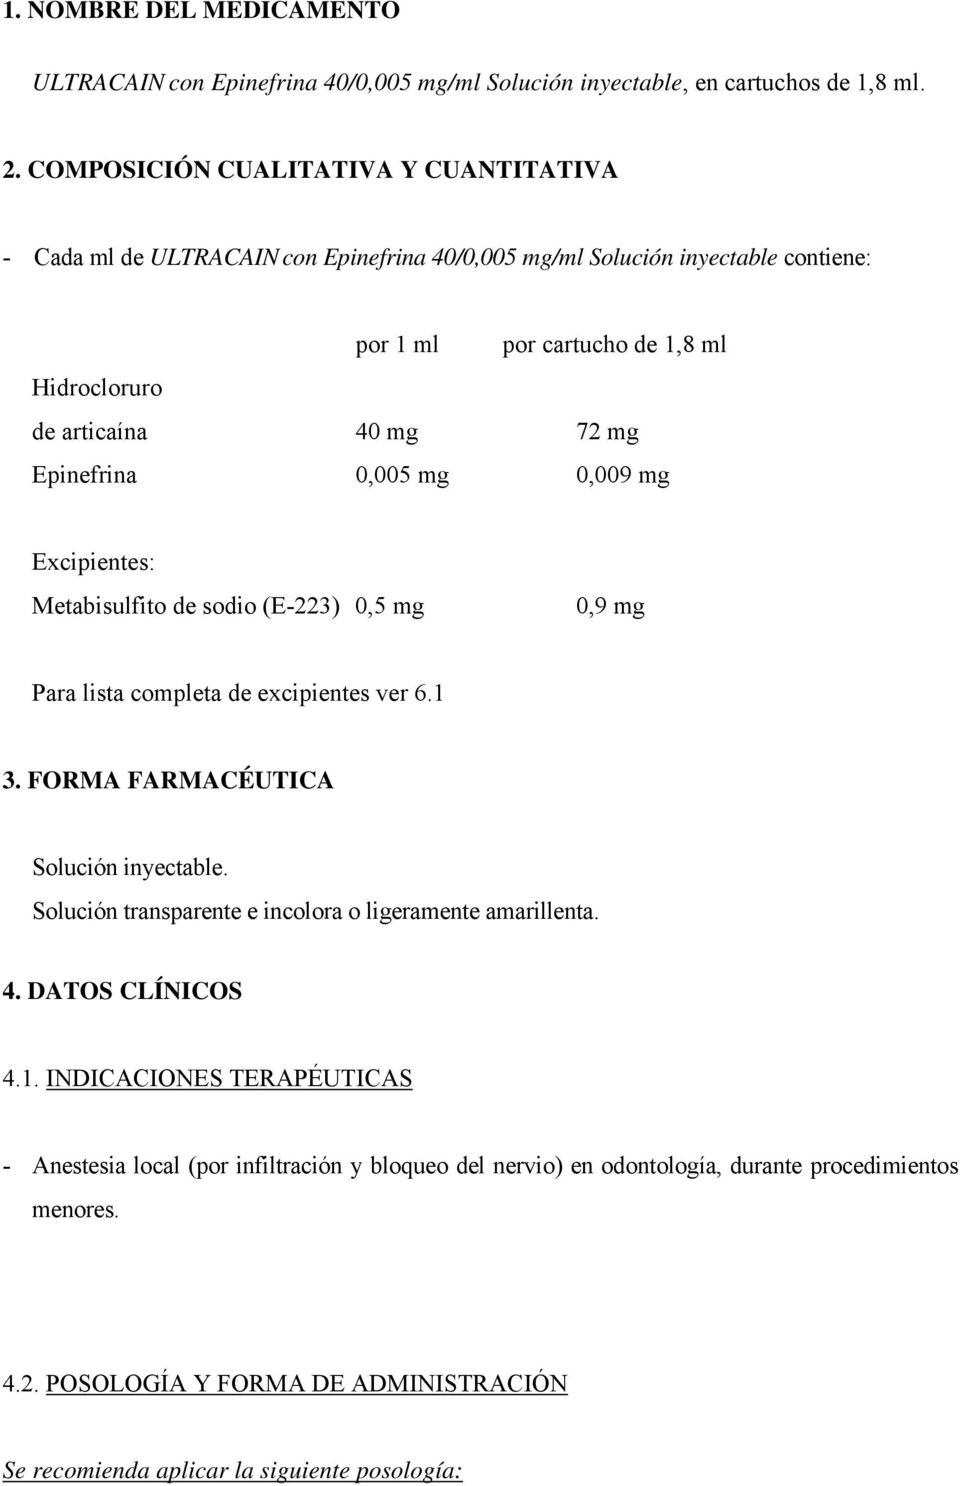 Epinefrina 0,005 mg 0,009 mg Excipientes: Metabisulfito de sodio (E-223) 0,5 mg 0,9 mg Para lista completa de excipientes ver 6.1 3. FORMA FARMACÉUTICA Solución inyectable.